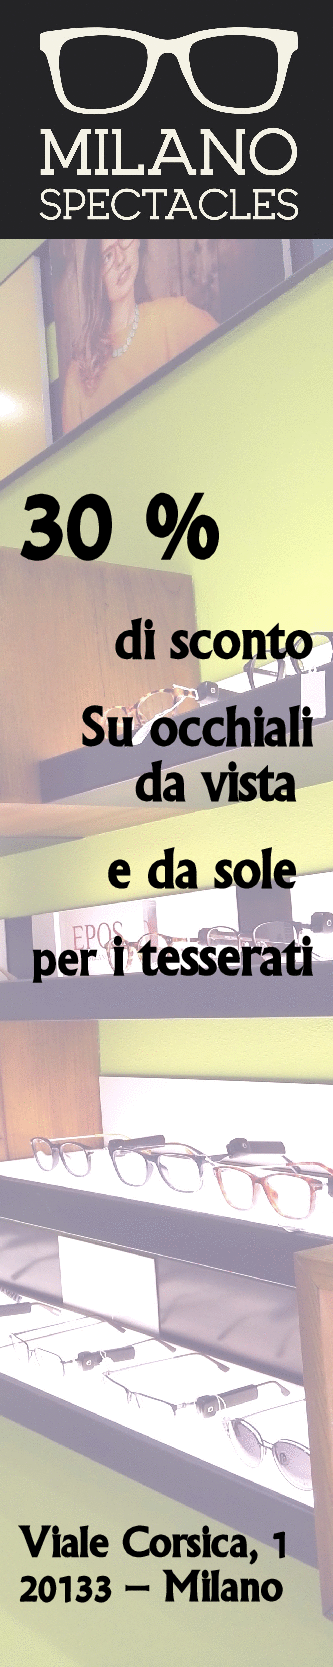 Ottica Milano Spectacles